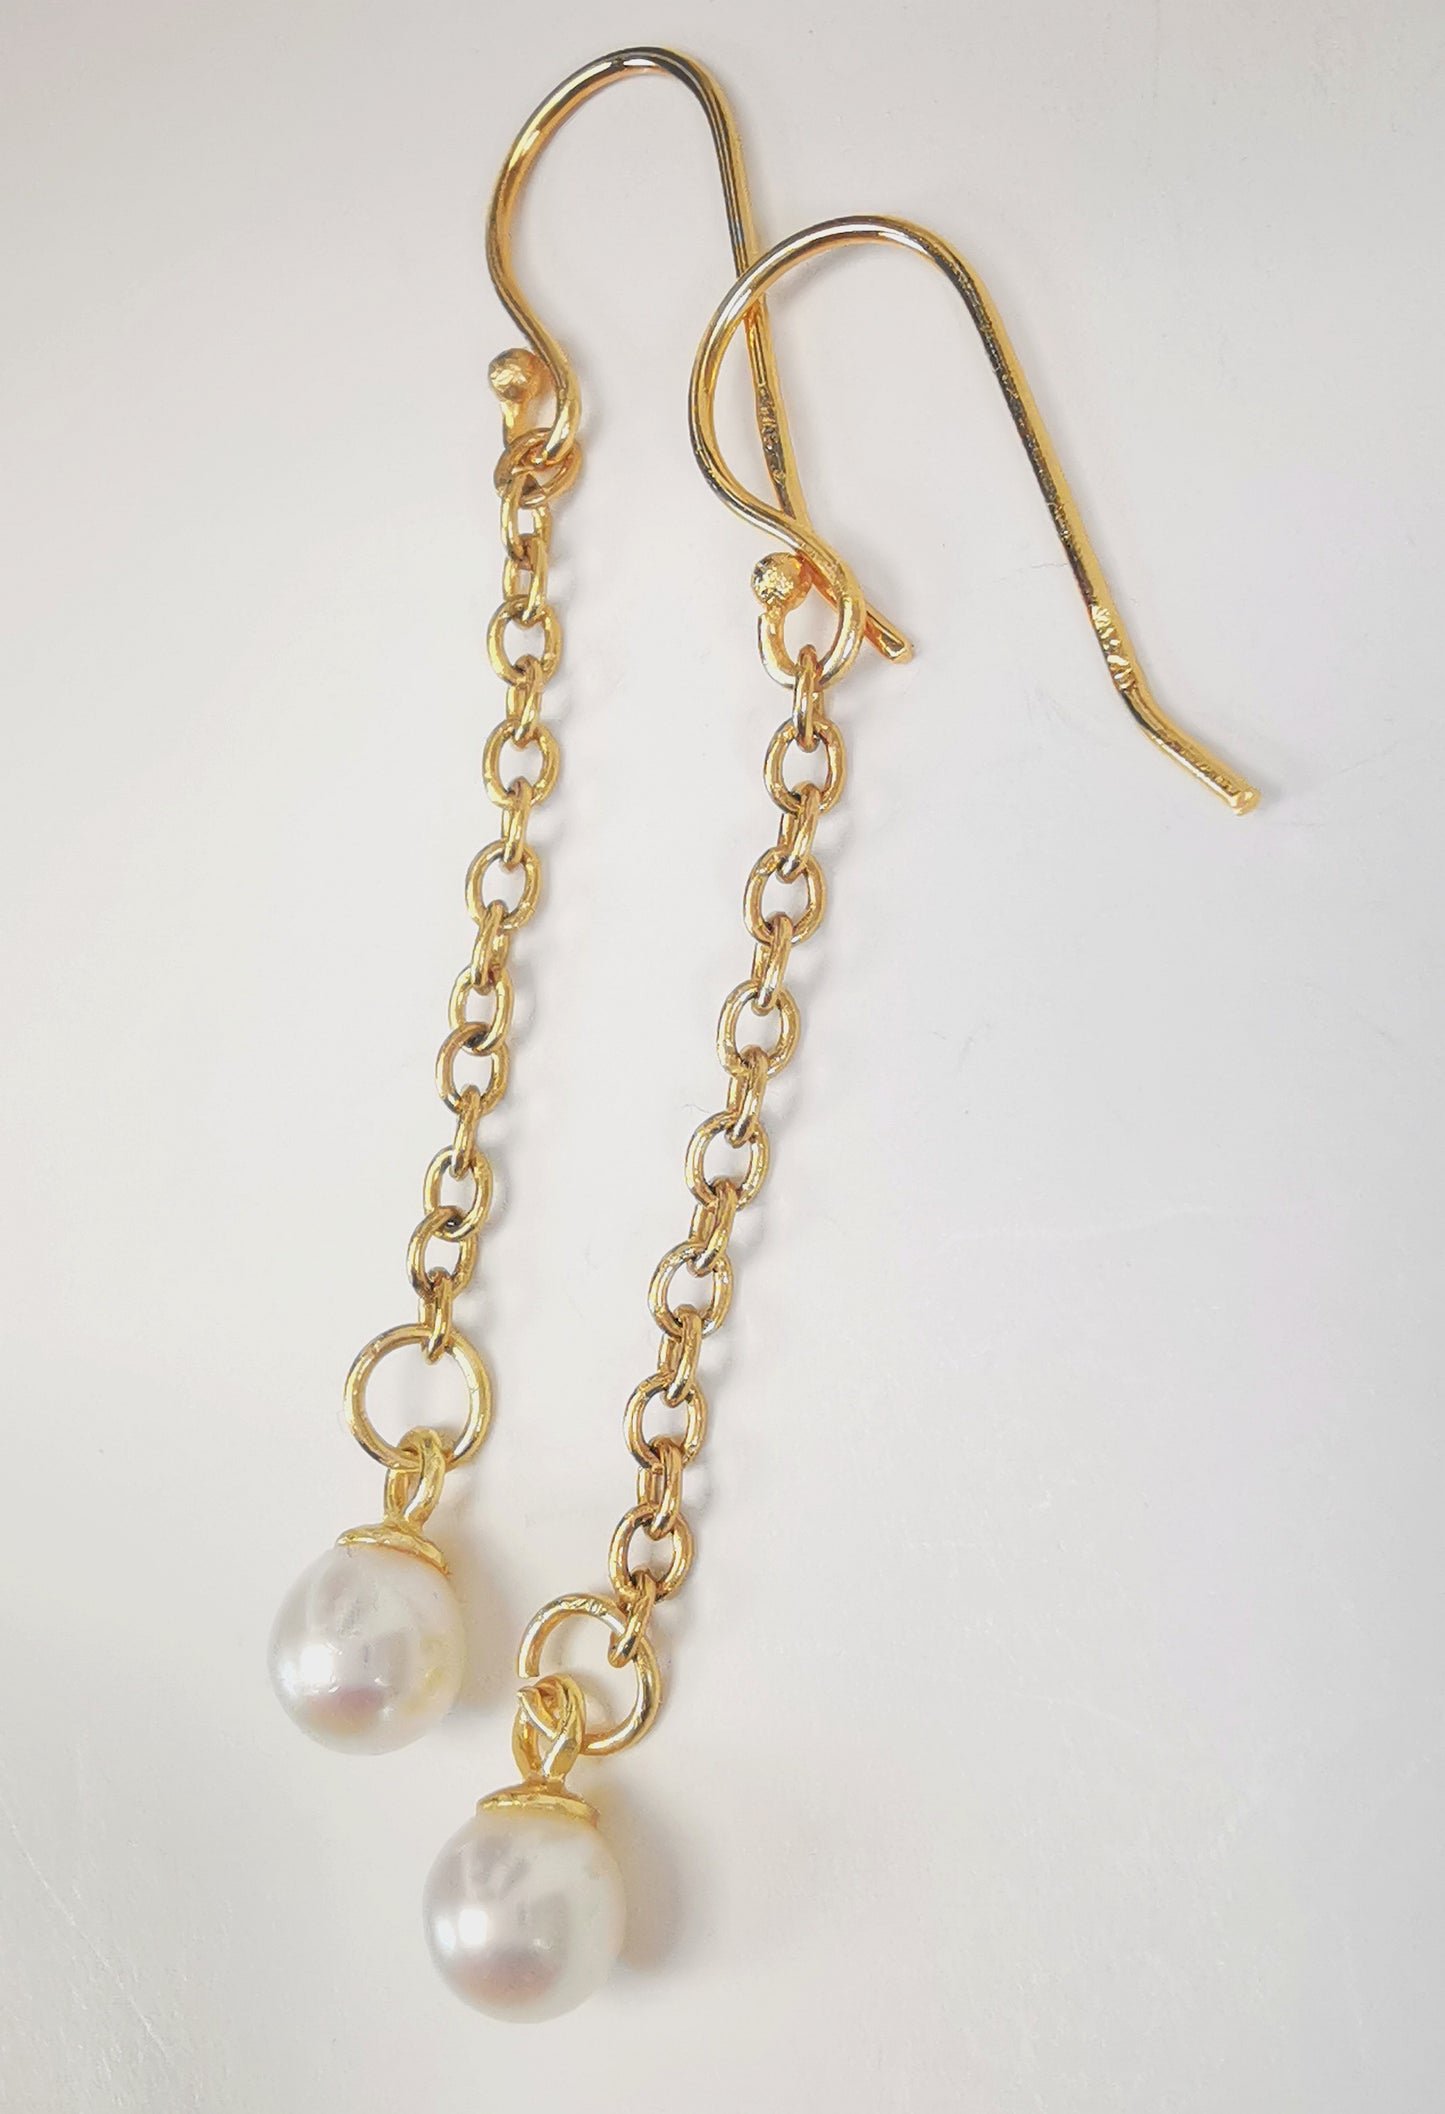 Boucles d'oreilles perles de culture blanches rondes 5mm sur pendants et chaînes plaqués or. Présentées cote à cote, boucle de gauche décalée vers le haut, sur fond blanc. Vue de la droite en gros plan.